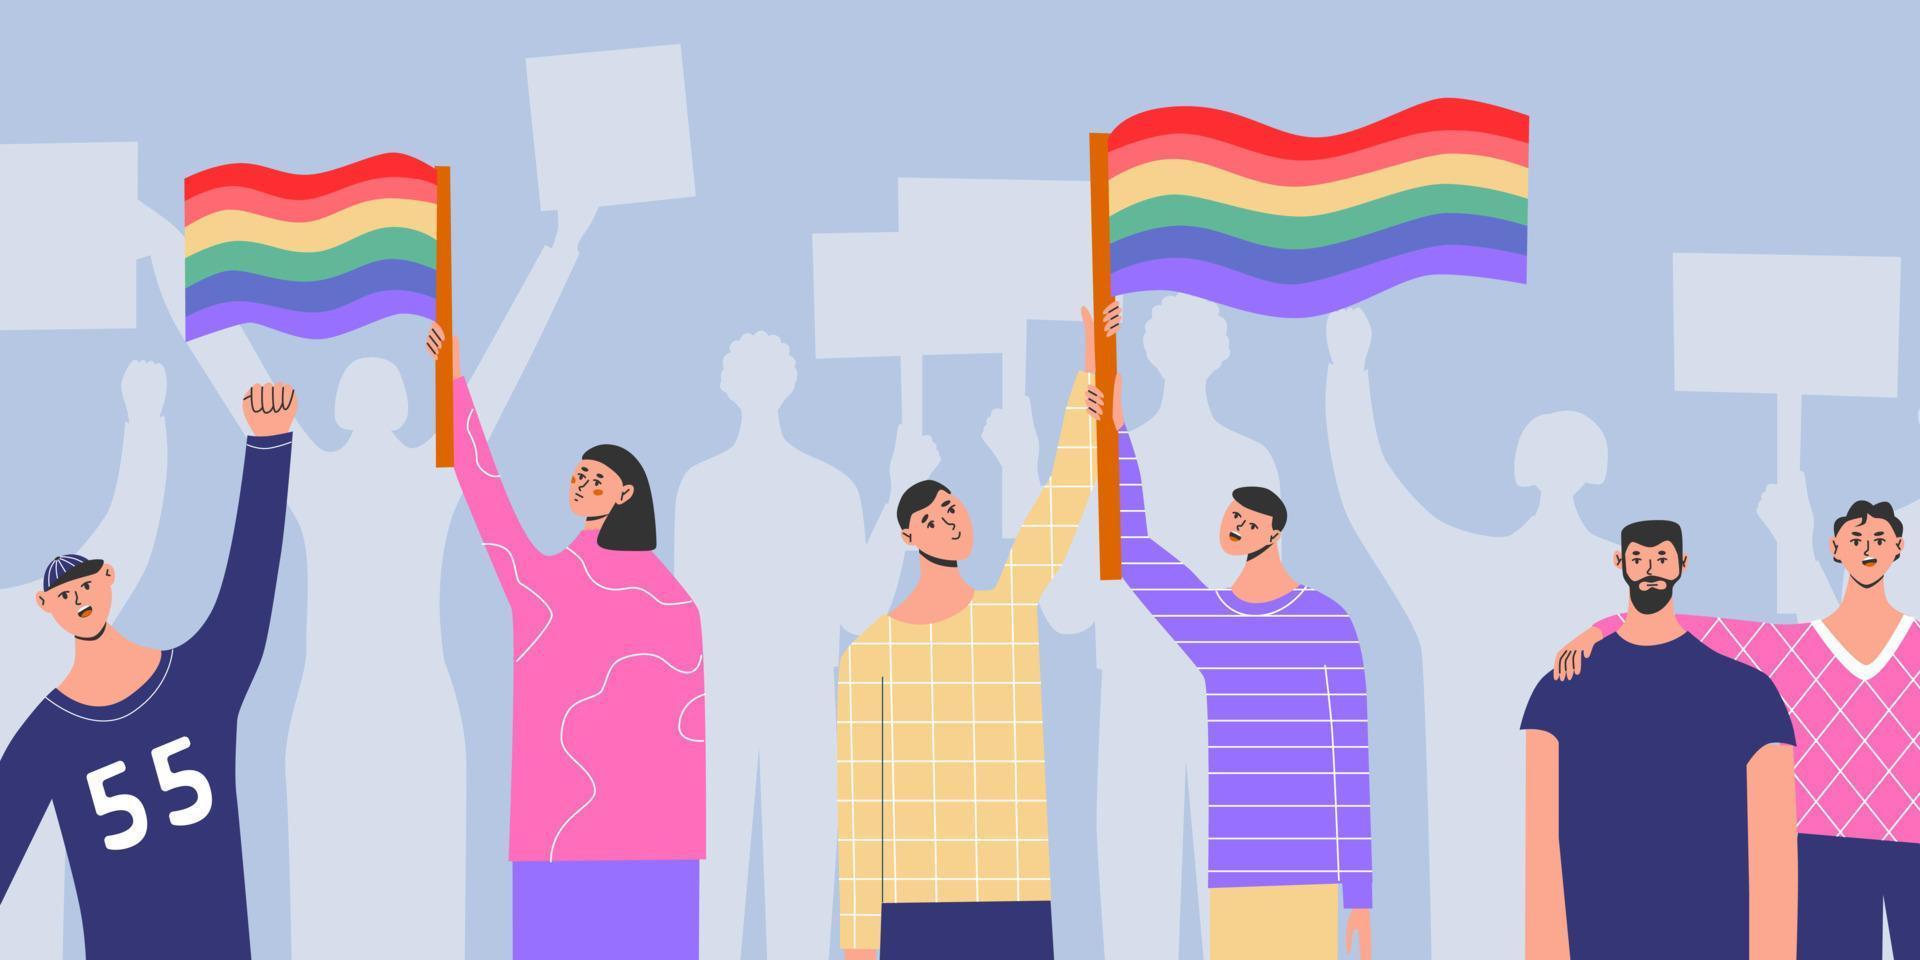 cartazes de pessoas com bandeira transgênero arco-íris lgbt, mês do orgulho, desfile contra a violência, descriminação, direitos humanos. vetor